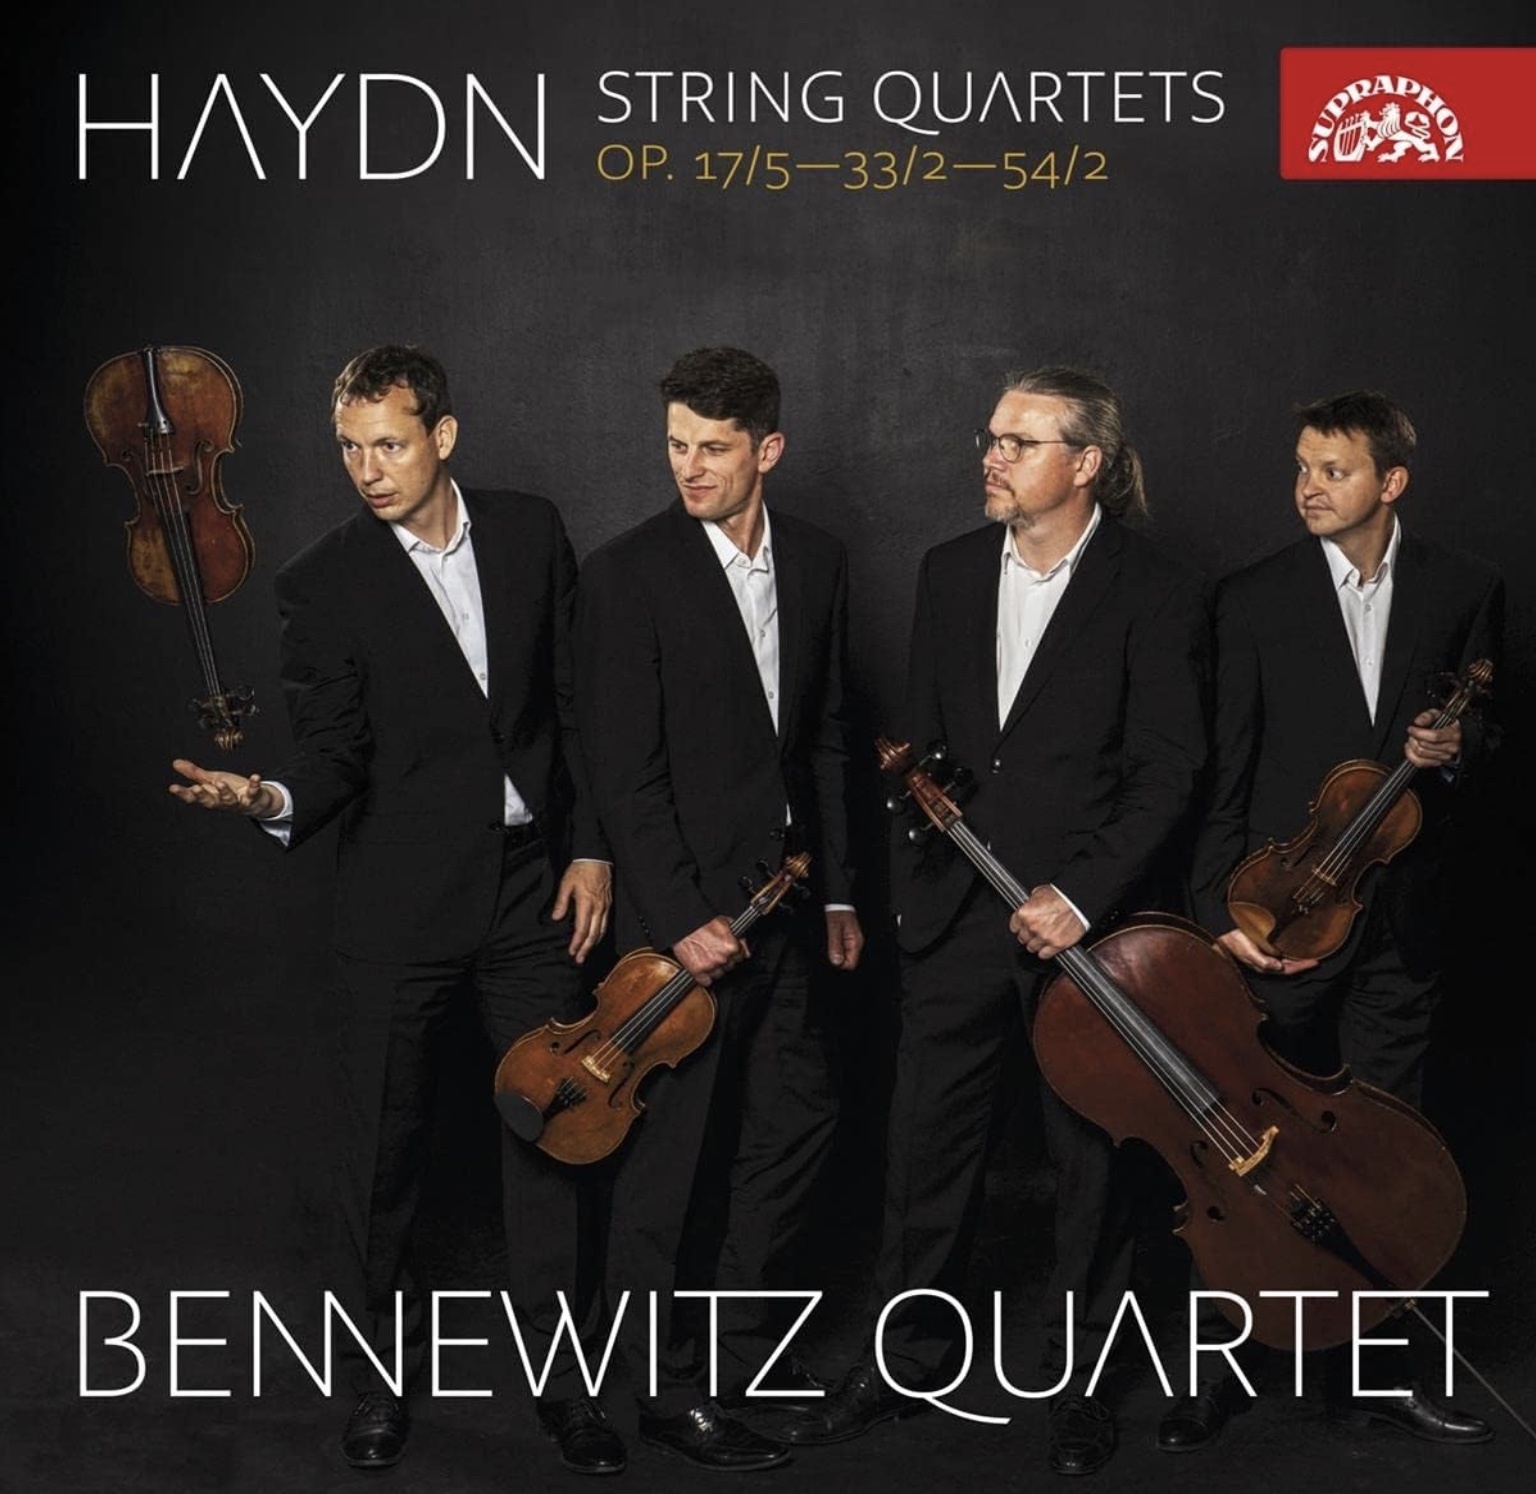 ハイドン–弦楽四重奏曲 - 1ページ目24 - ハイドン音盤倉庫 - Haydn